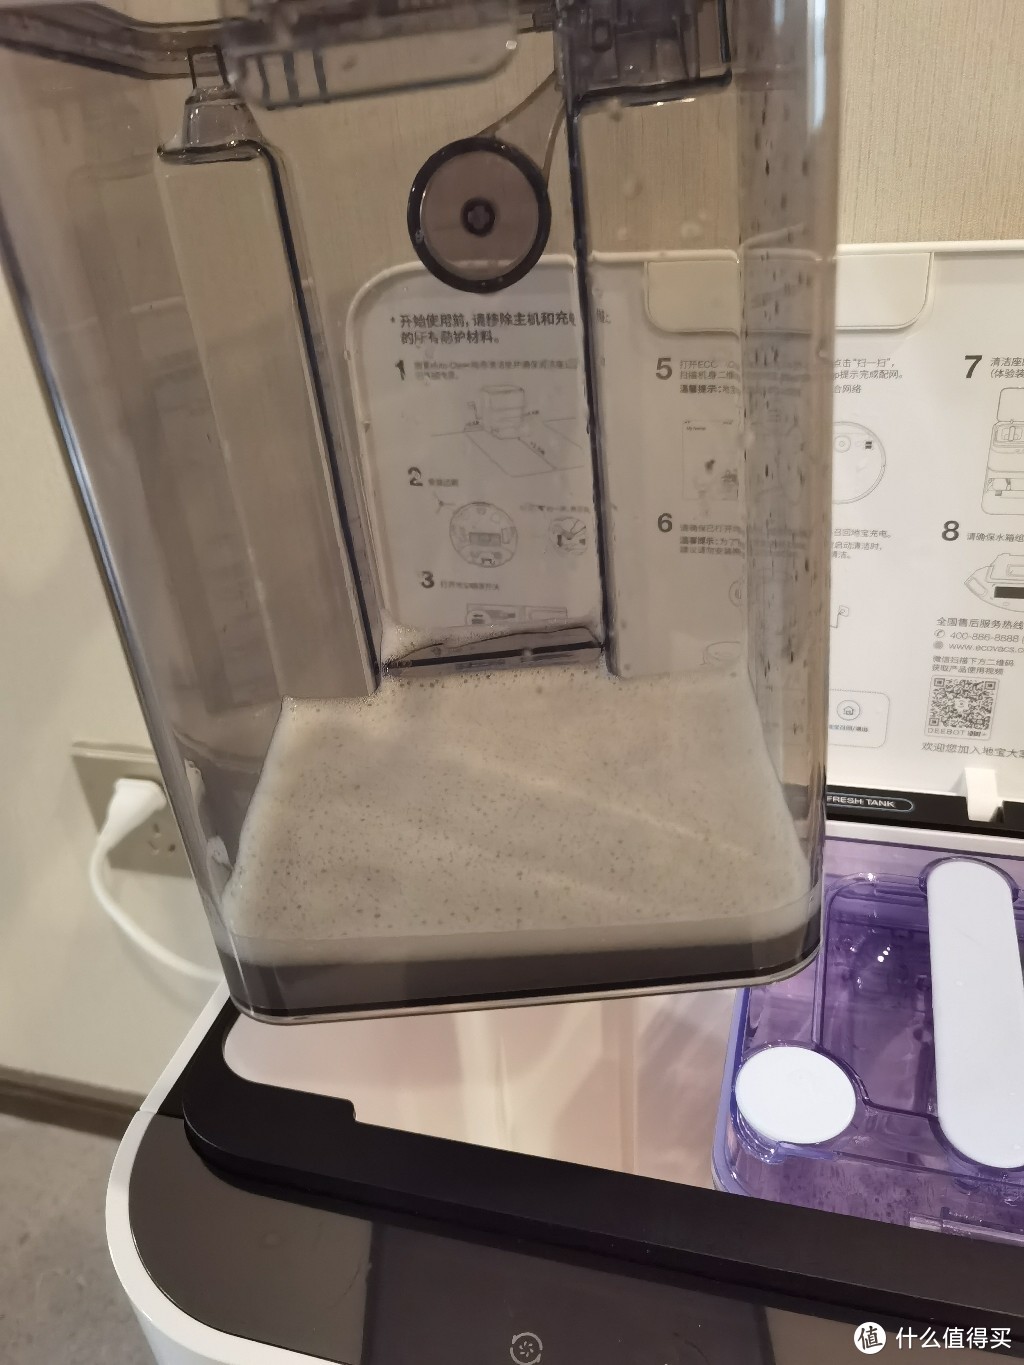 可以自己清洁拖布的科沃斯智能扫地机器人N9+